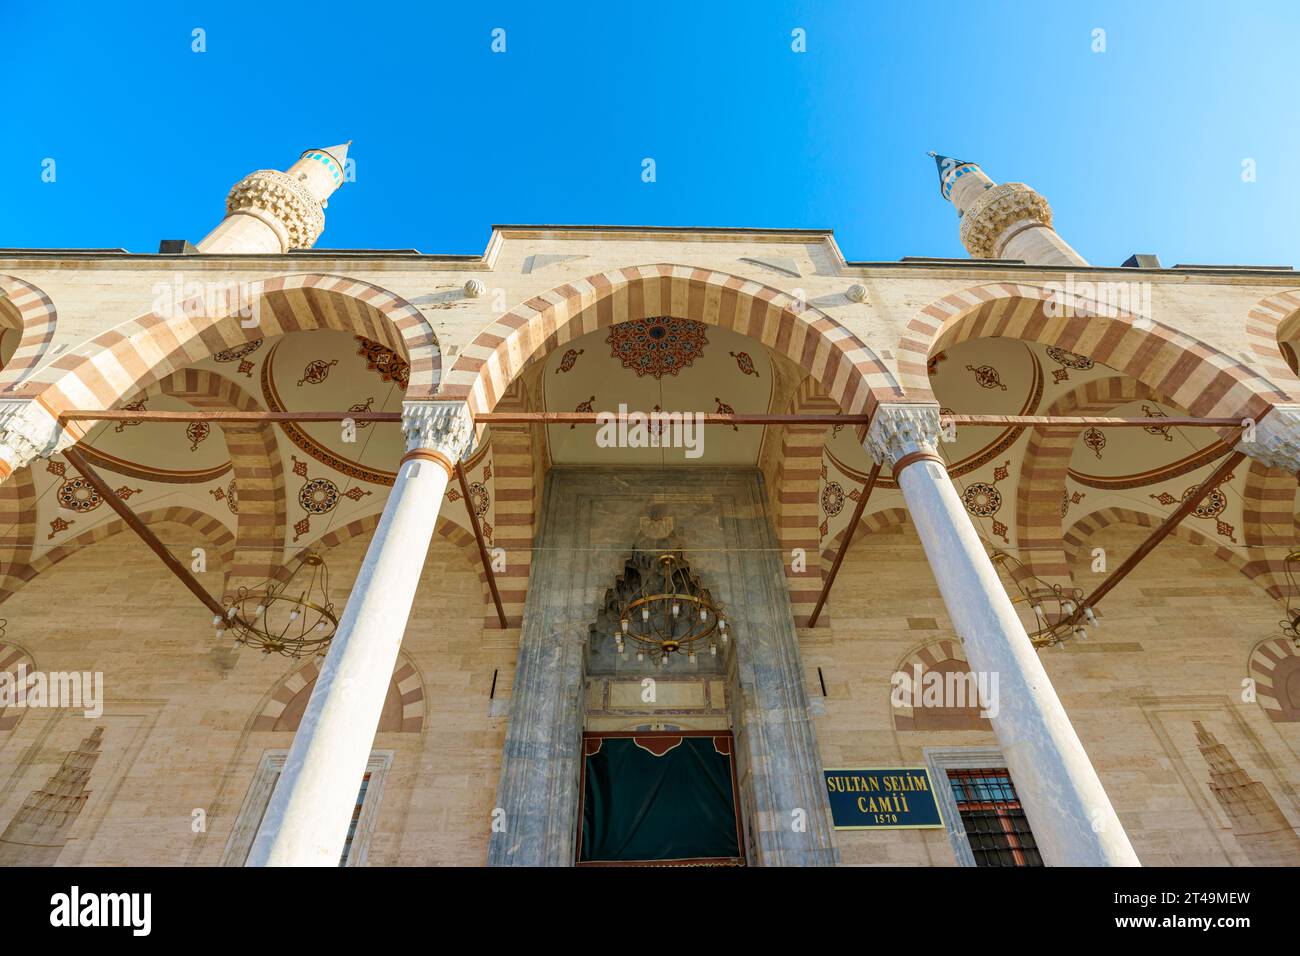 Mosquée Selimiye un magnifique témoignage de la brillance architecturale ottomane à Konya, Turquie. Cette structure incarne le riche patrimoine culturel de la ville Banque D'Images